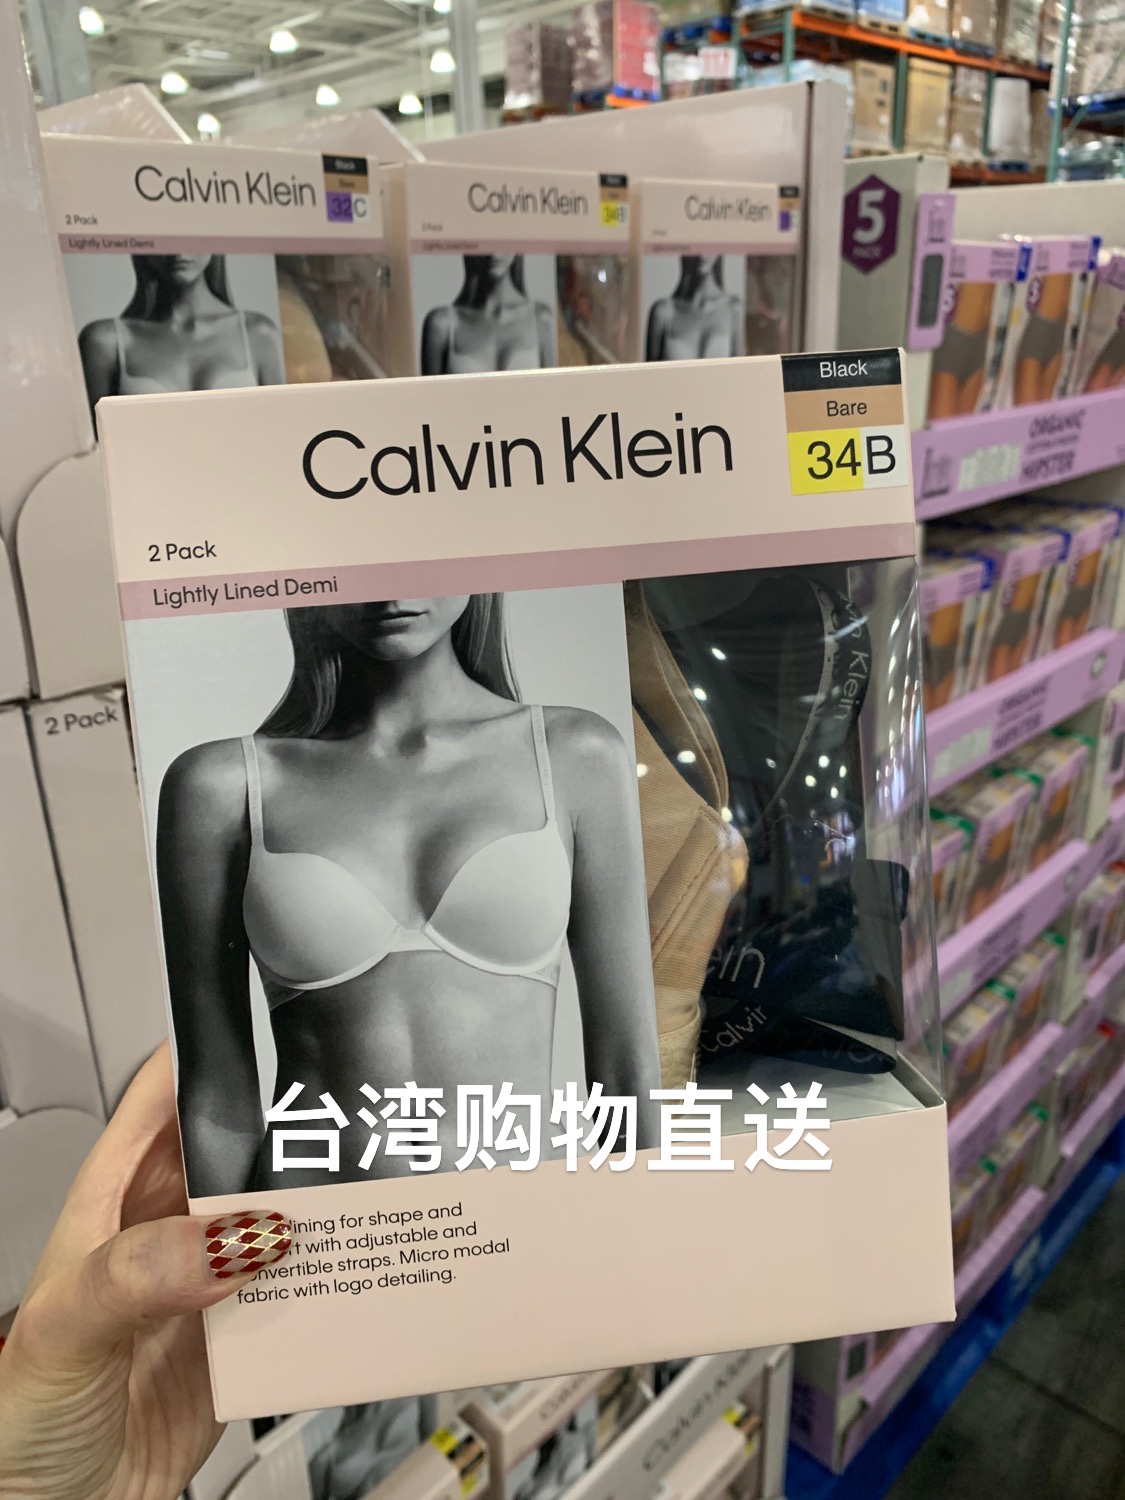 顺丰包邮台湾costco采购 calvin klein 二件装女士内衣 文胸套装